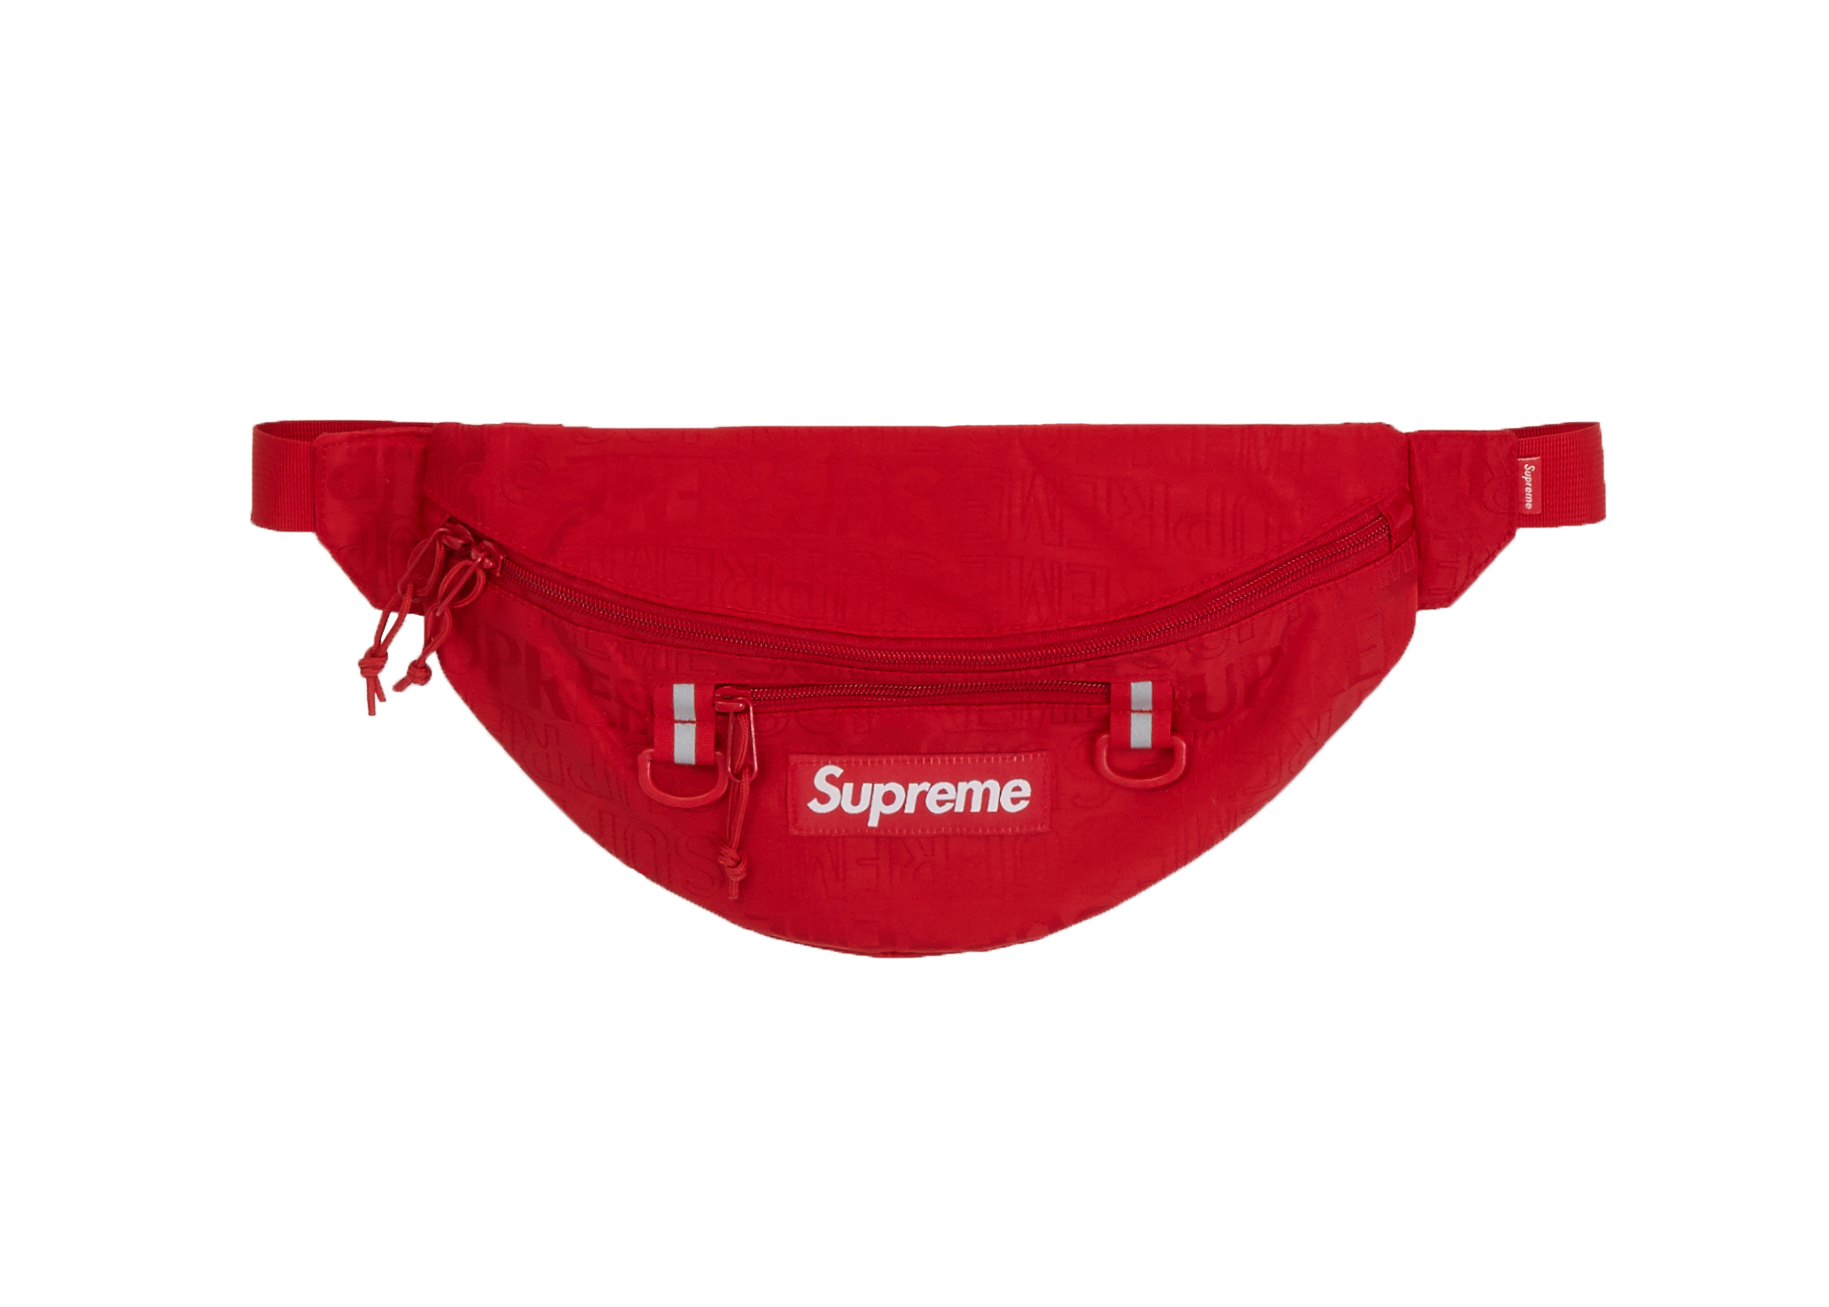 waist bag supreme 2019